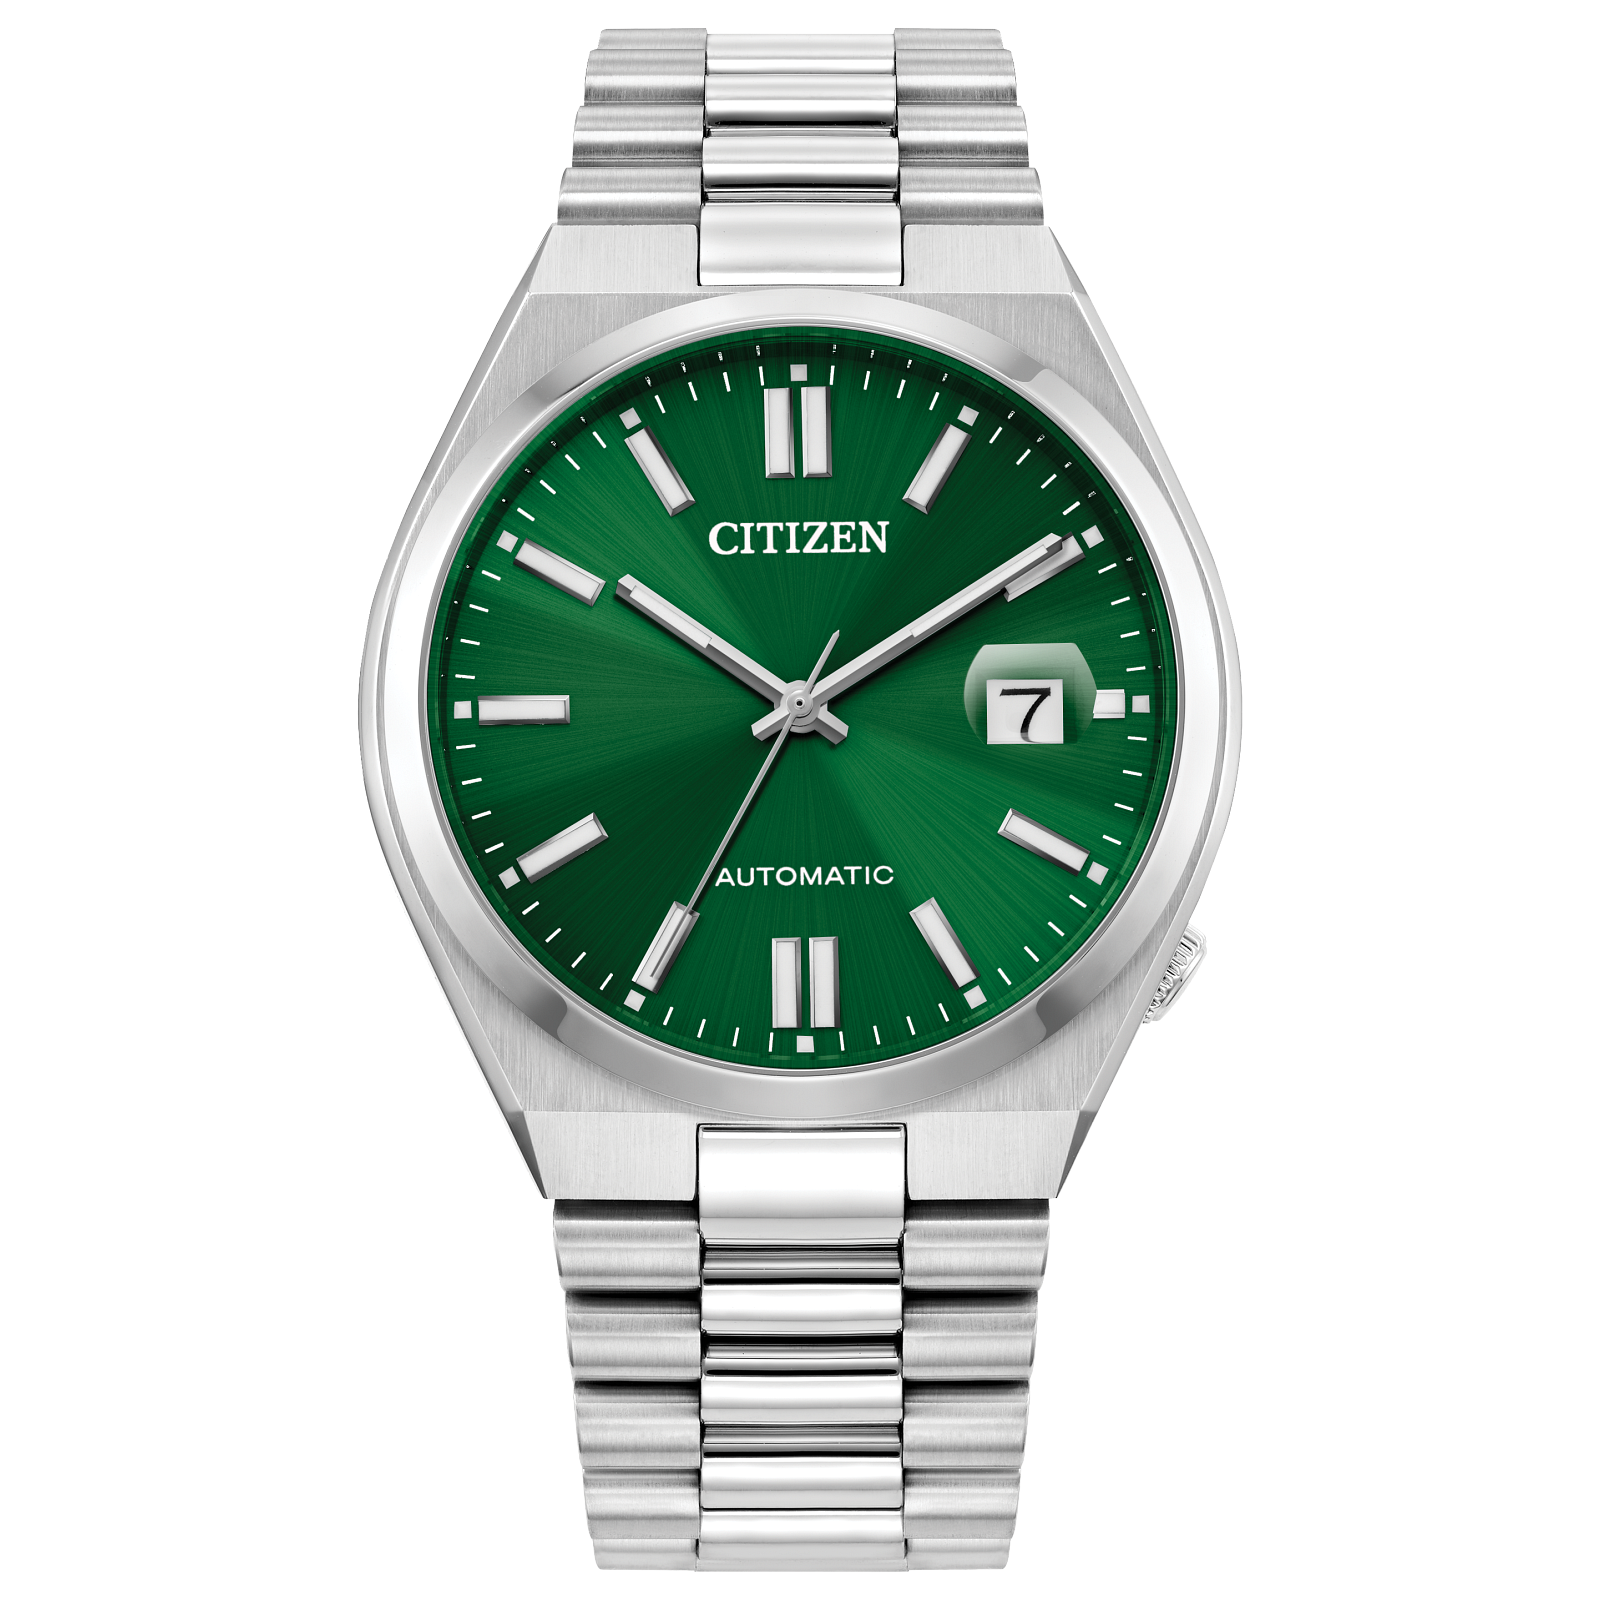 Citizen Men's TSUYOSA Collection Watch